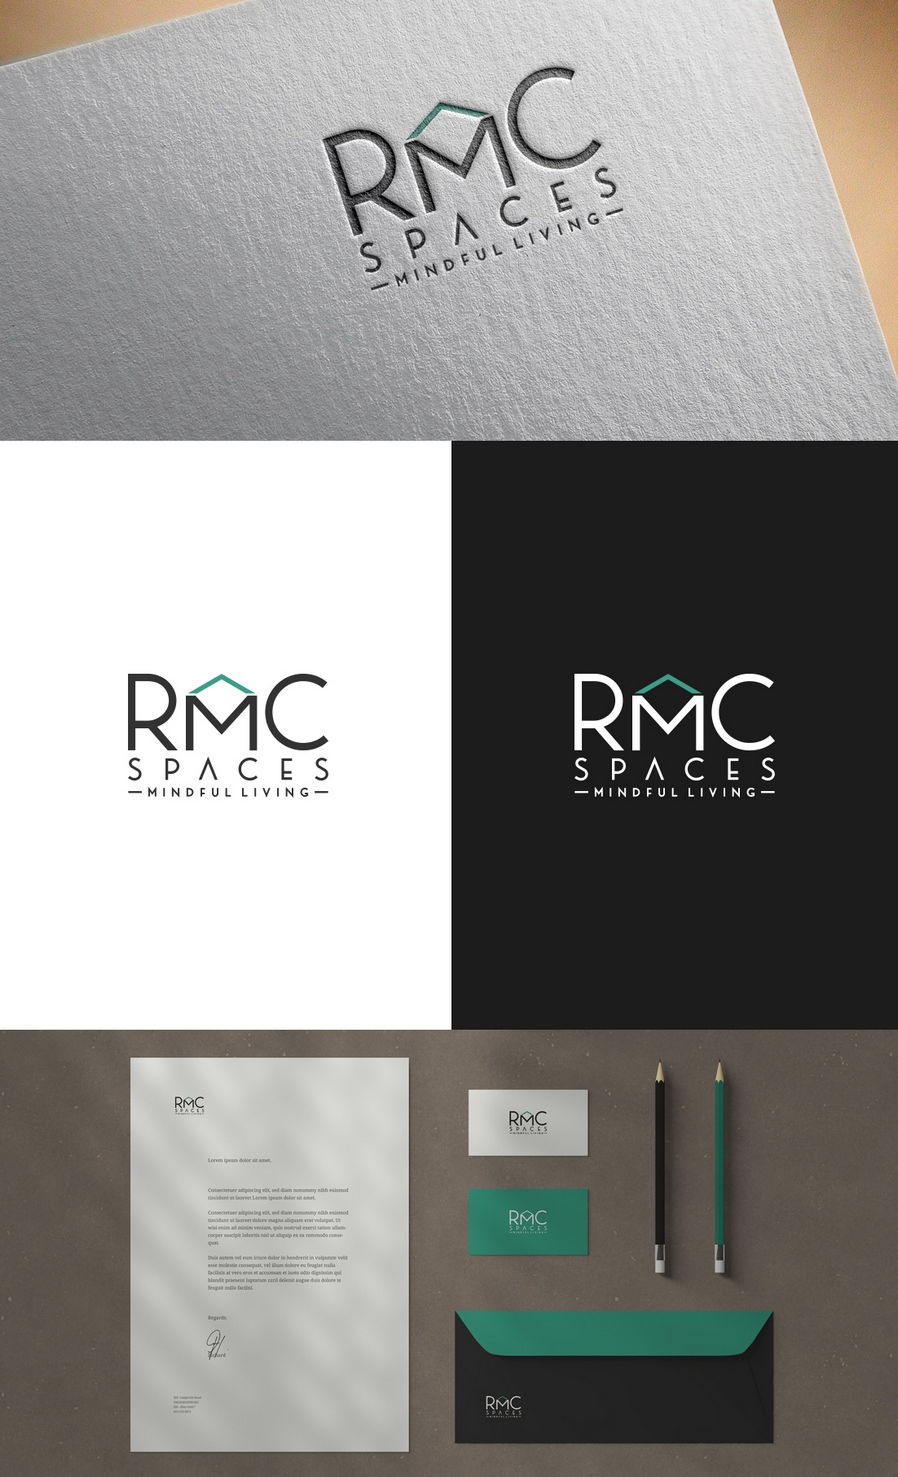 RMC空间徽标和社交页面设计简介